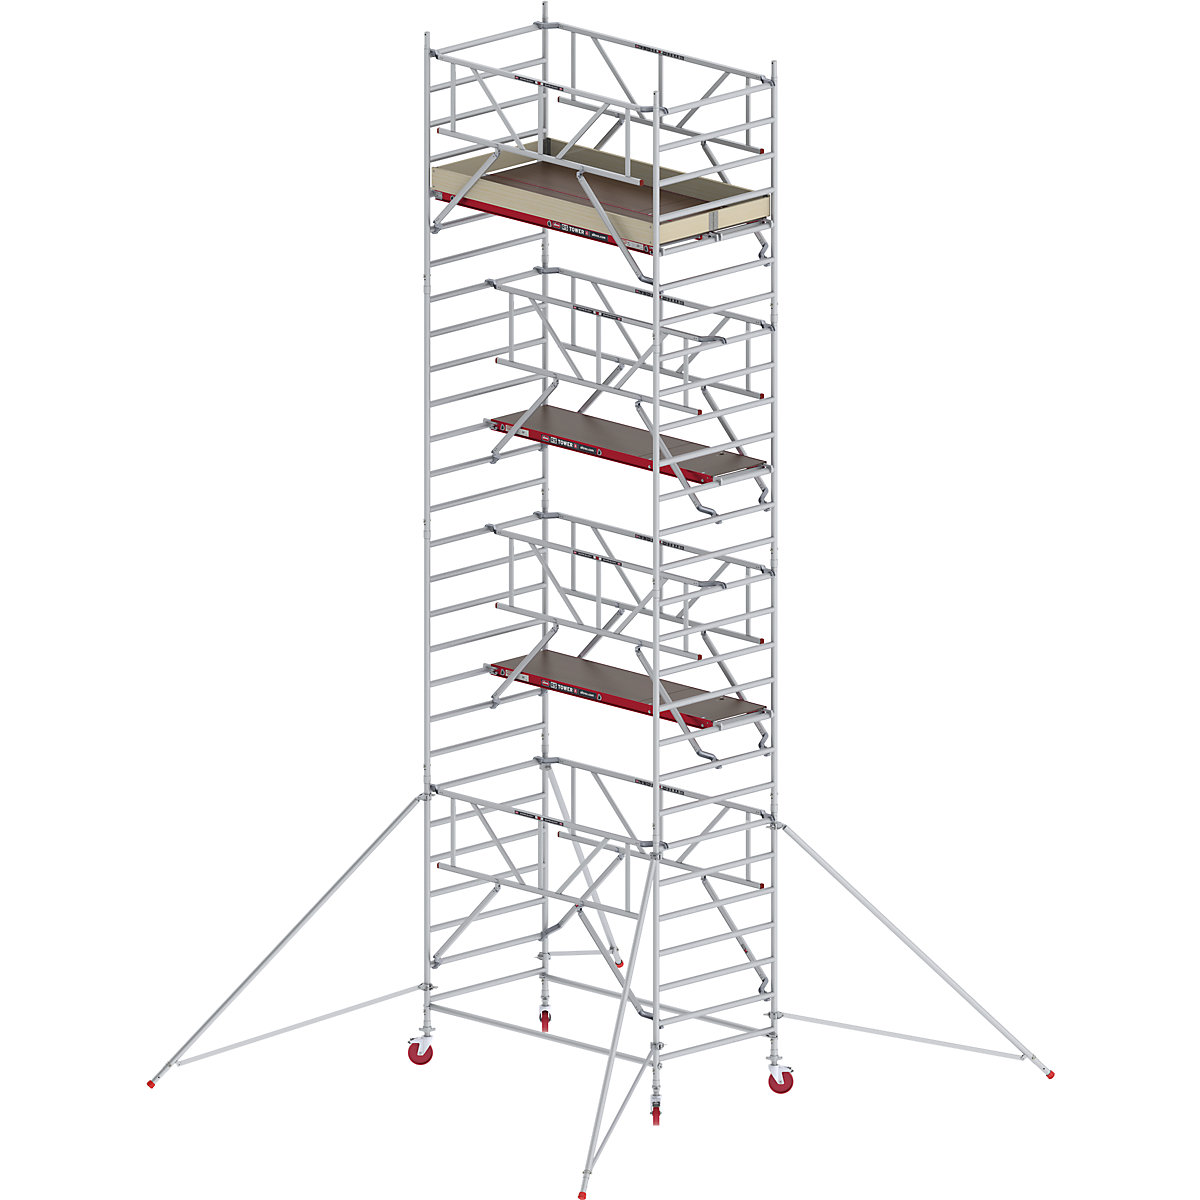 Trabattello mobile RS TOWER 42 largo con Safe-Quick® – Altrex, piattaforma in legno, lunghezza 1,85 m, altezza di lavoro 9,20 m-9